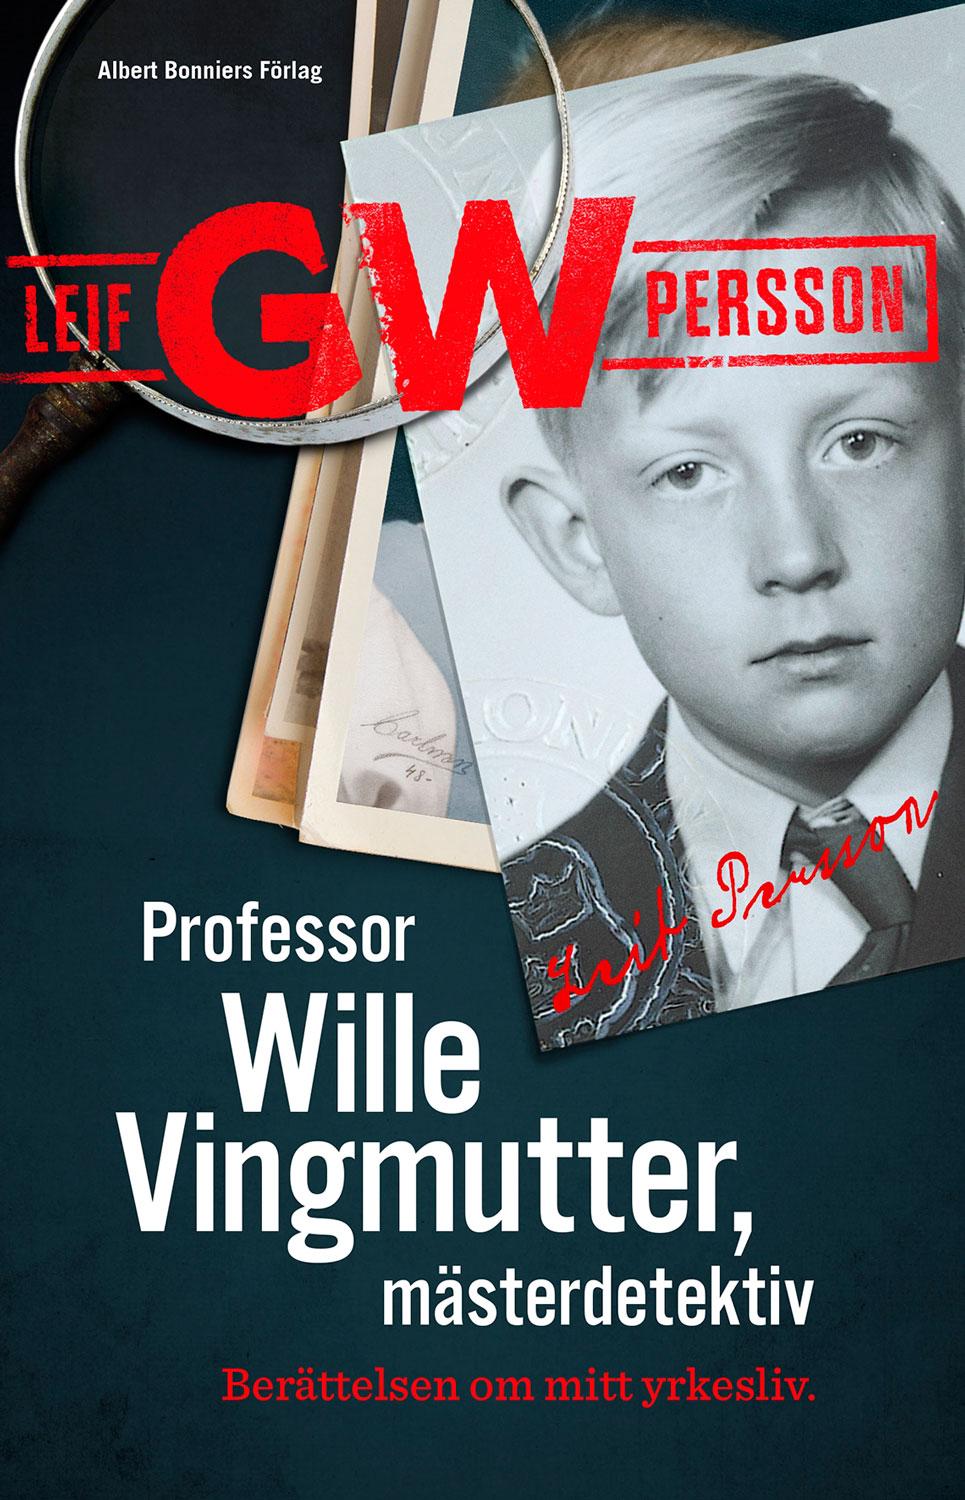 I nya memoarerna ”Professor Wille Vingmutter, ­mästerdetektiv” skriver Leif GW Persson om kända mordutredningar, rutinmässig otrohet, alkoholmissbruk och relationen till Göran Persson.